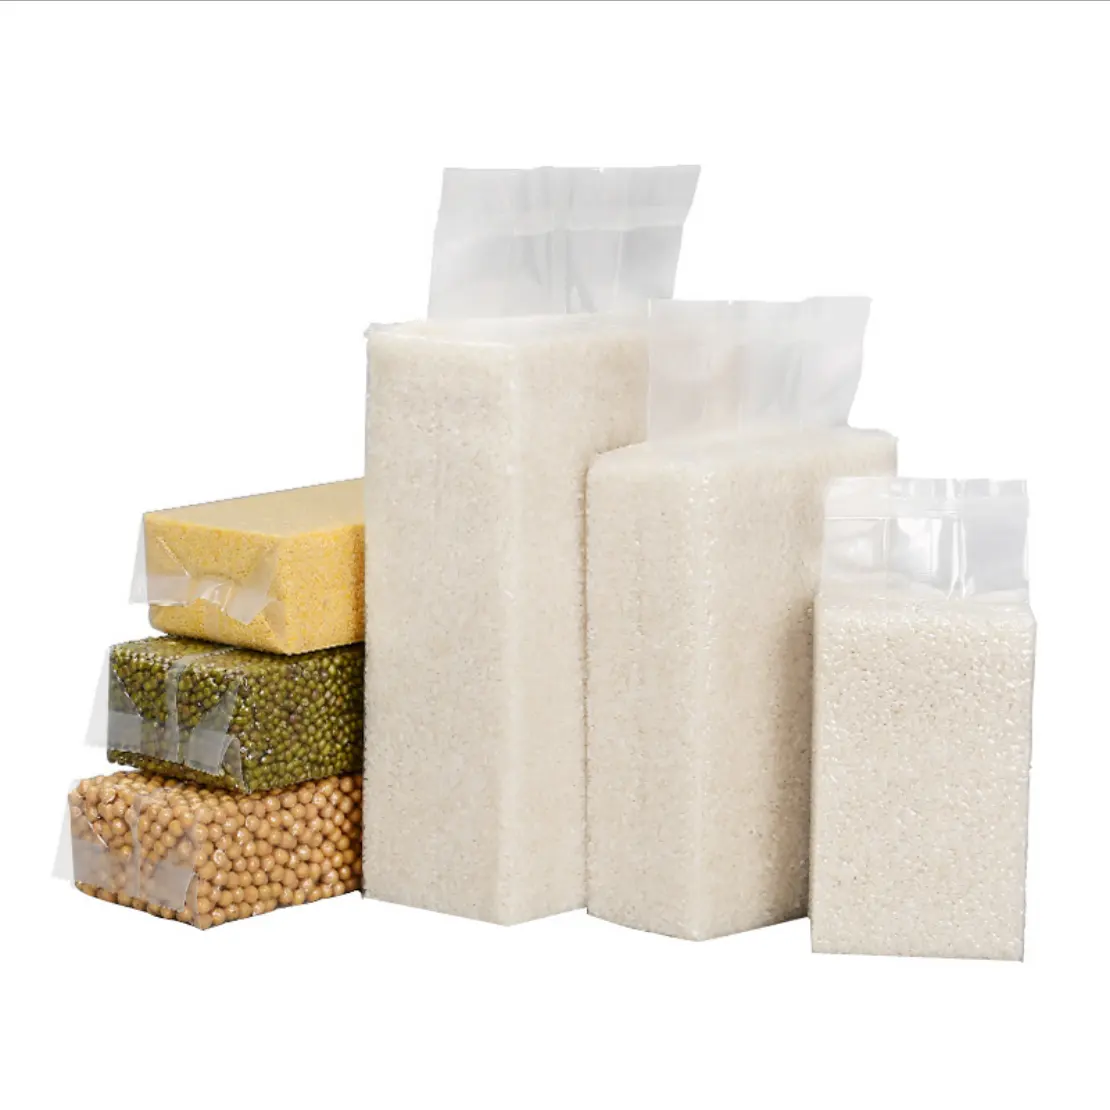 透明なプラスチック製のヒートシール可能な米レンガ食品包装真空袋米豆用混合穀物米包装袋